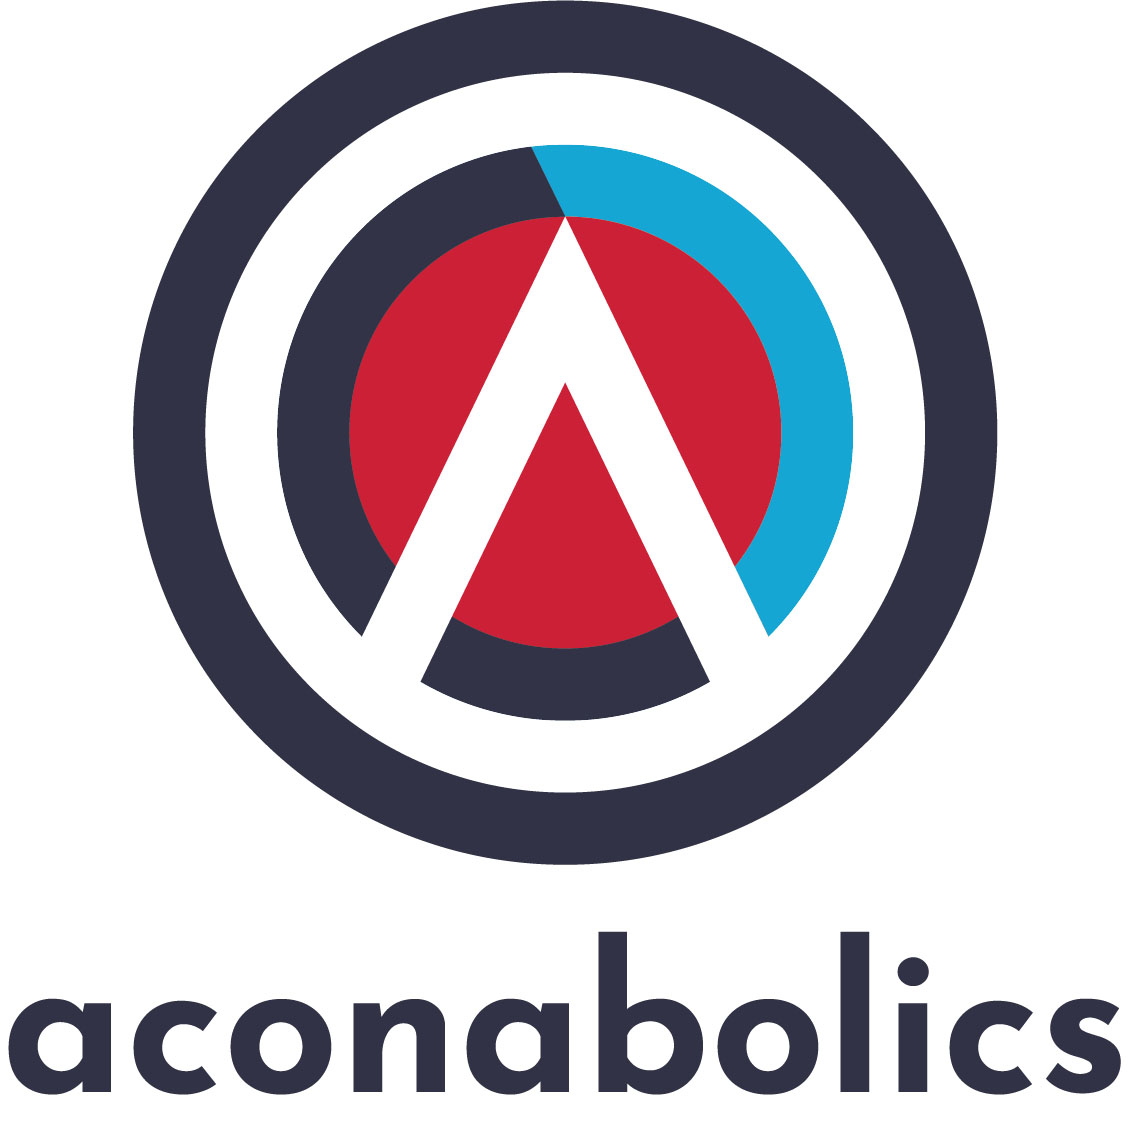 The Aconabolics logo